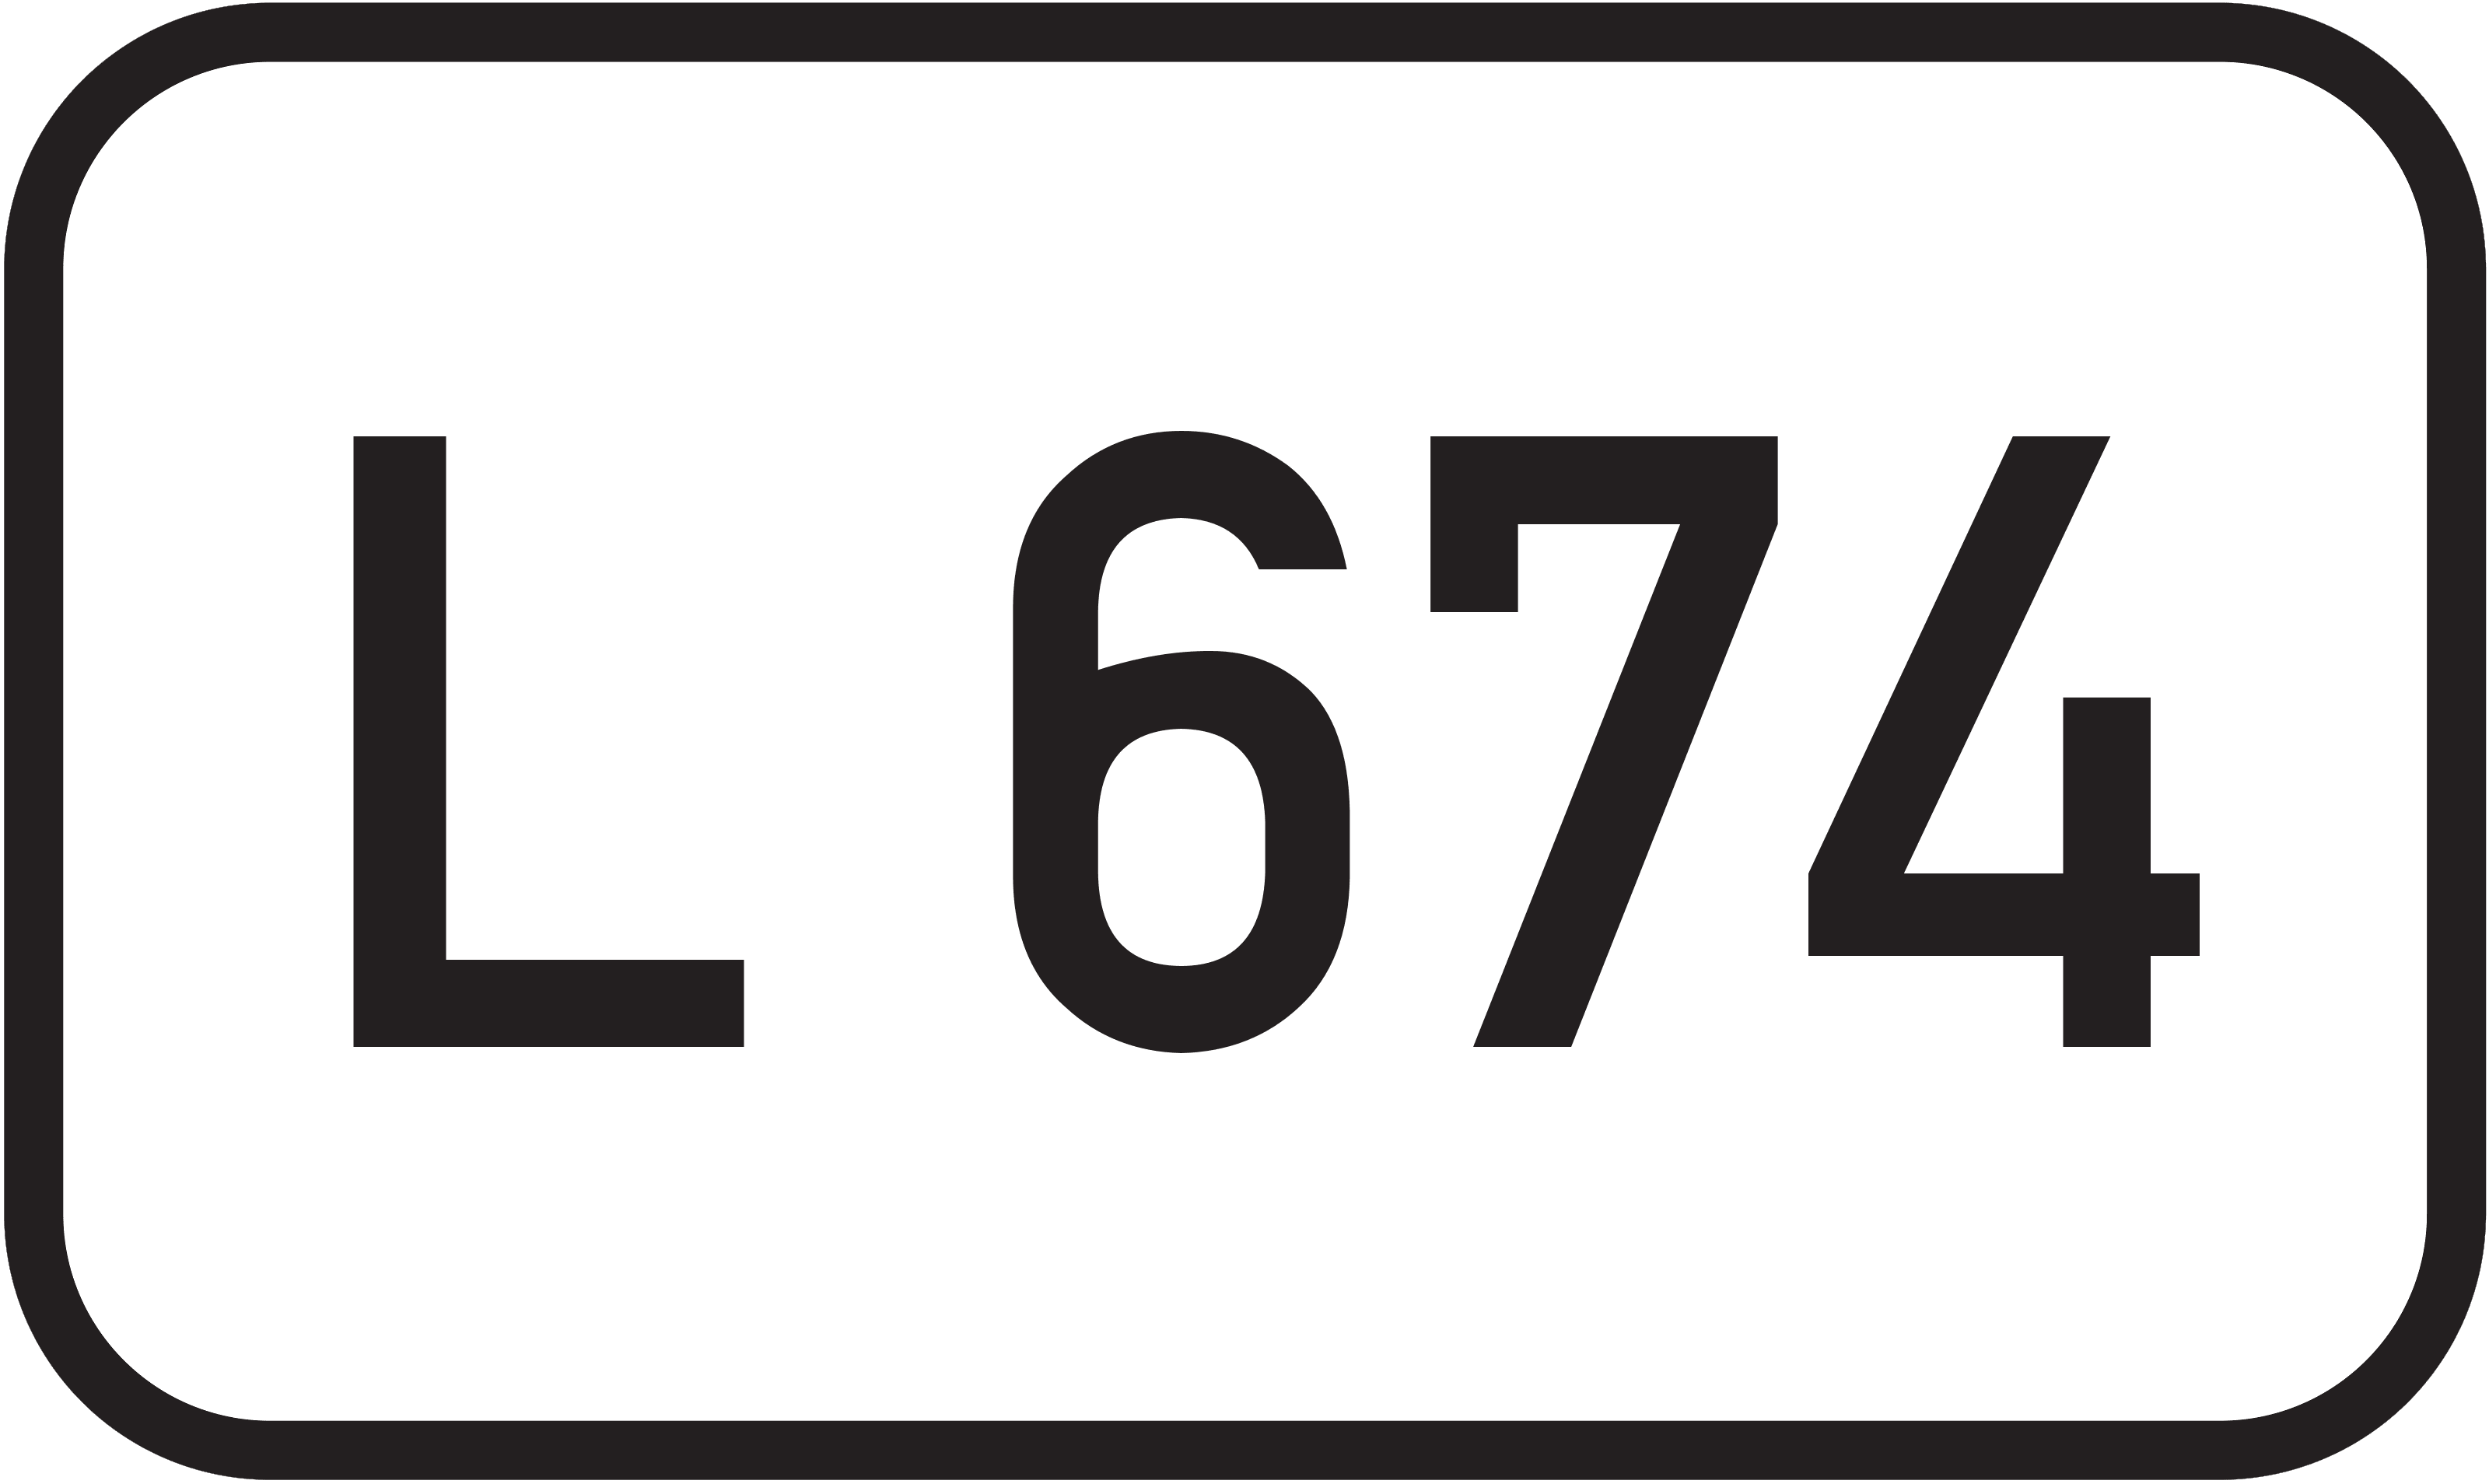 Landesstraße L 674